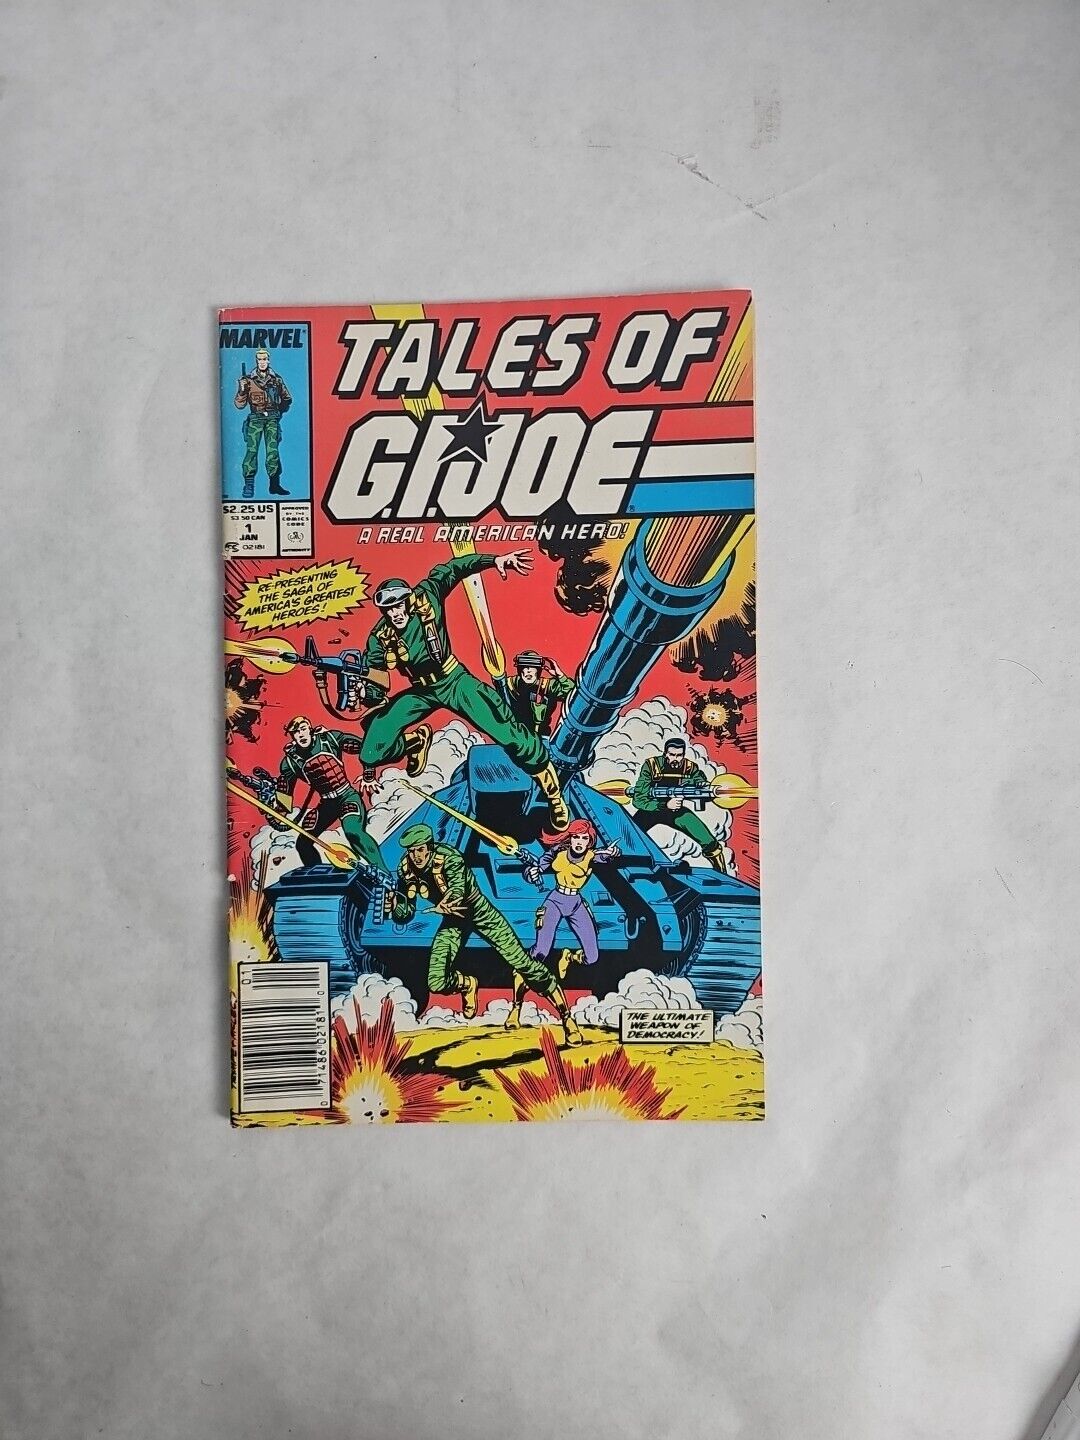 Tales of G.I. Joe #1 Newsstand Mid Grade Vol. 1 No. 1 Marvel Comics